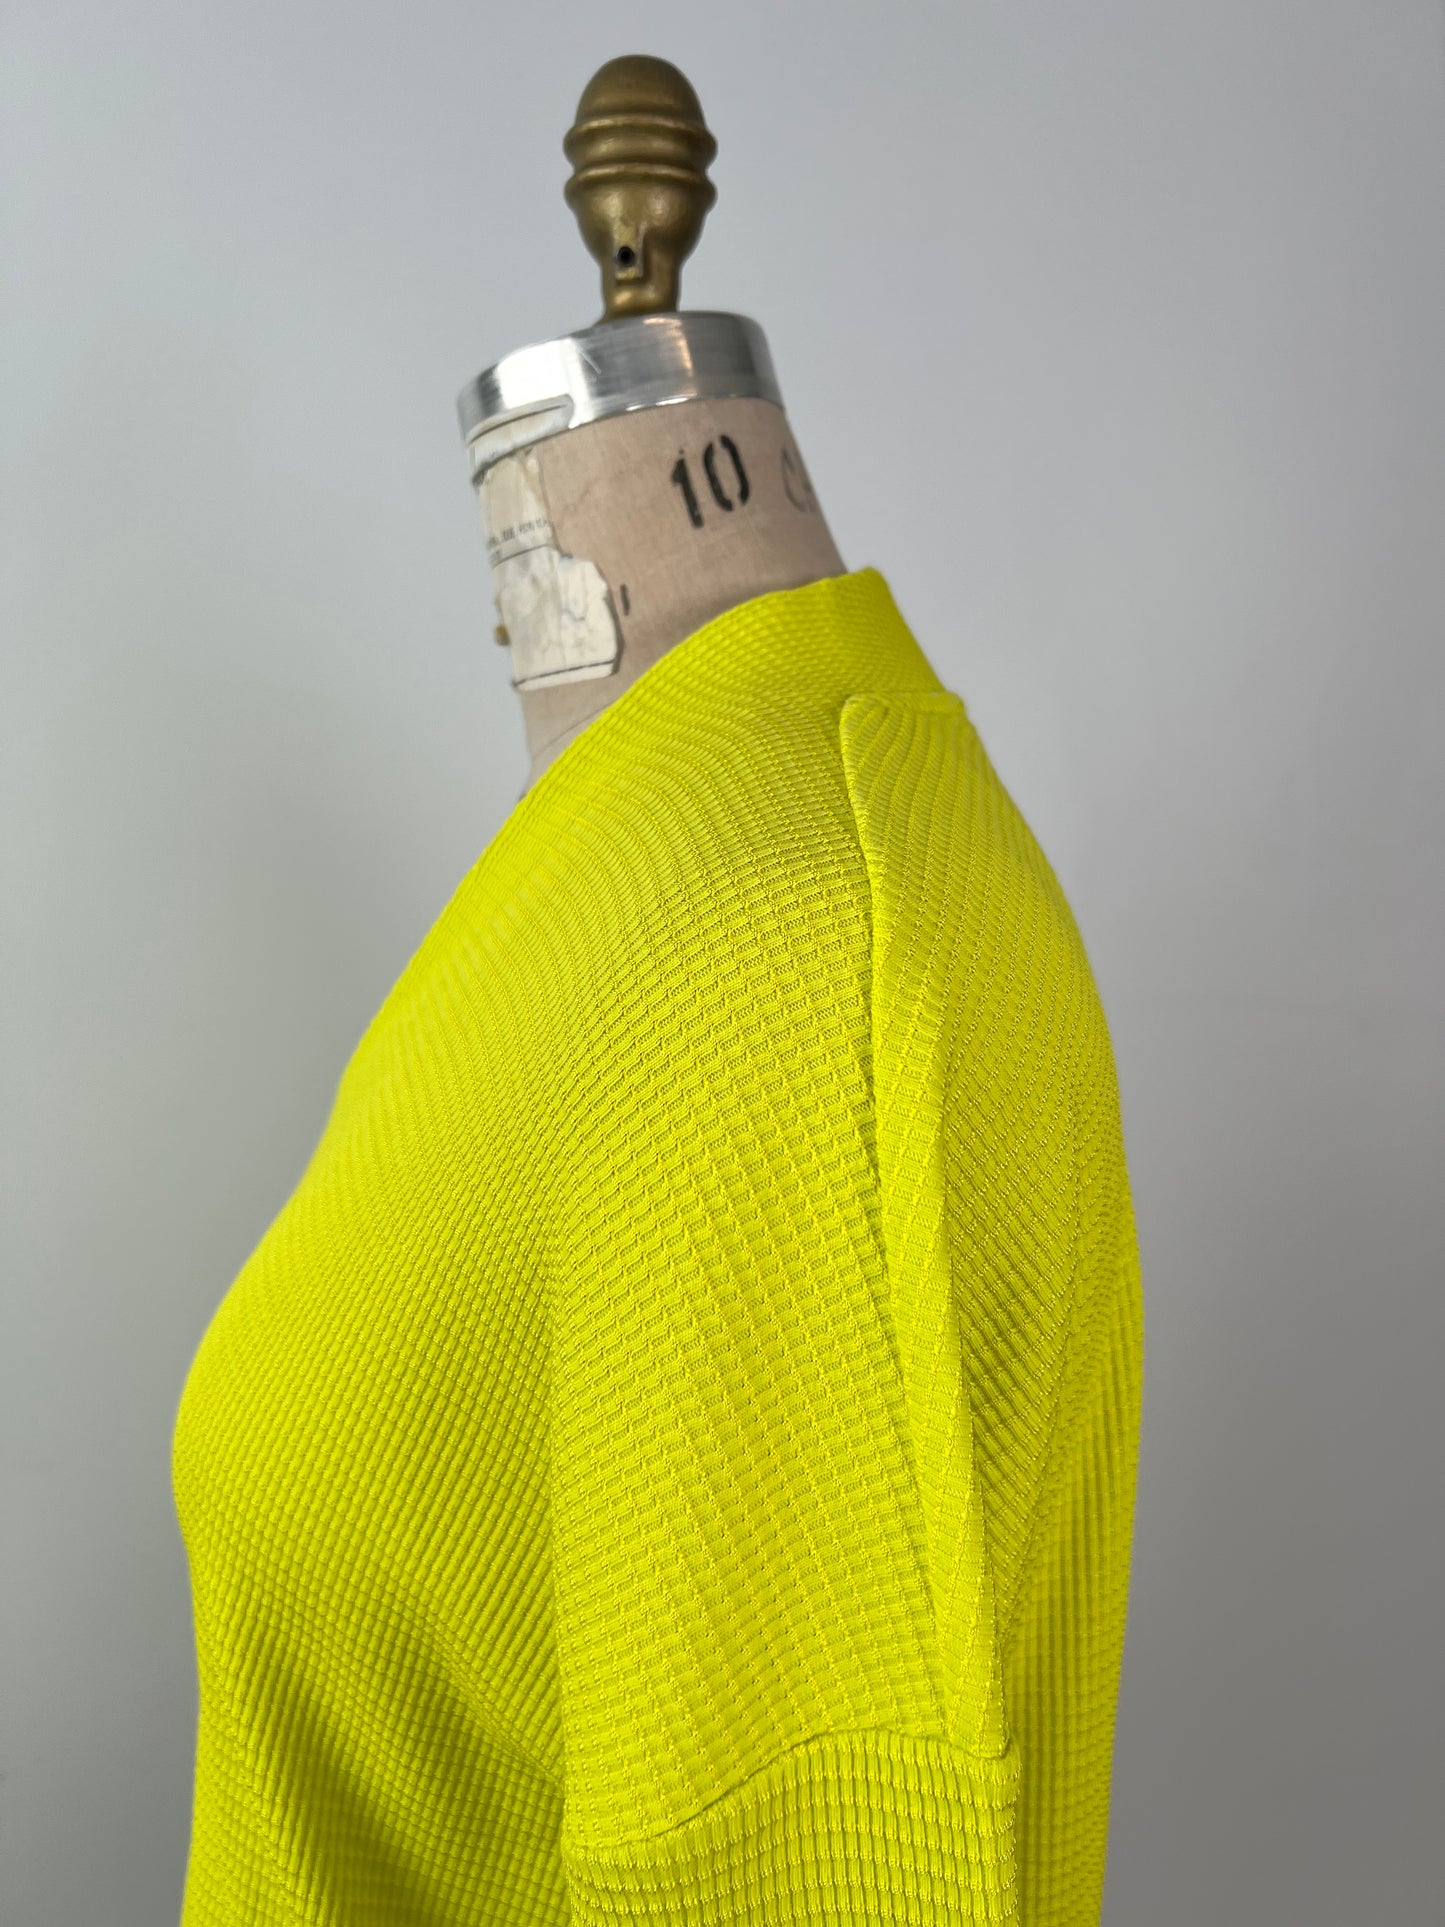 Chandail jaune néon texturé  (6-10-12)